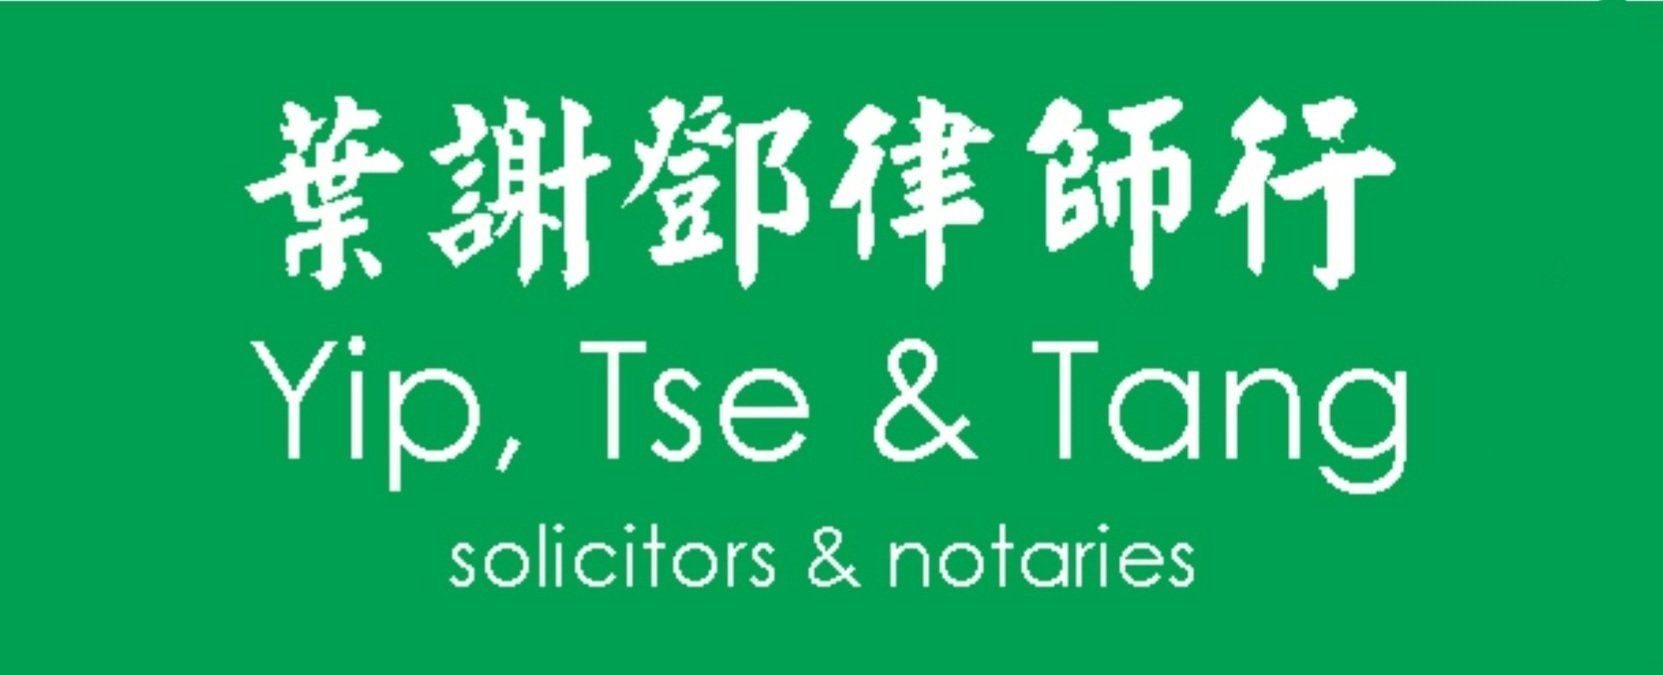 yip tse & tang solicitors logo